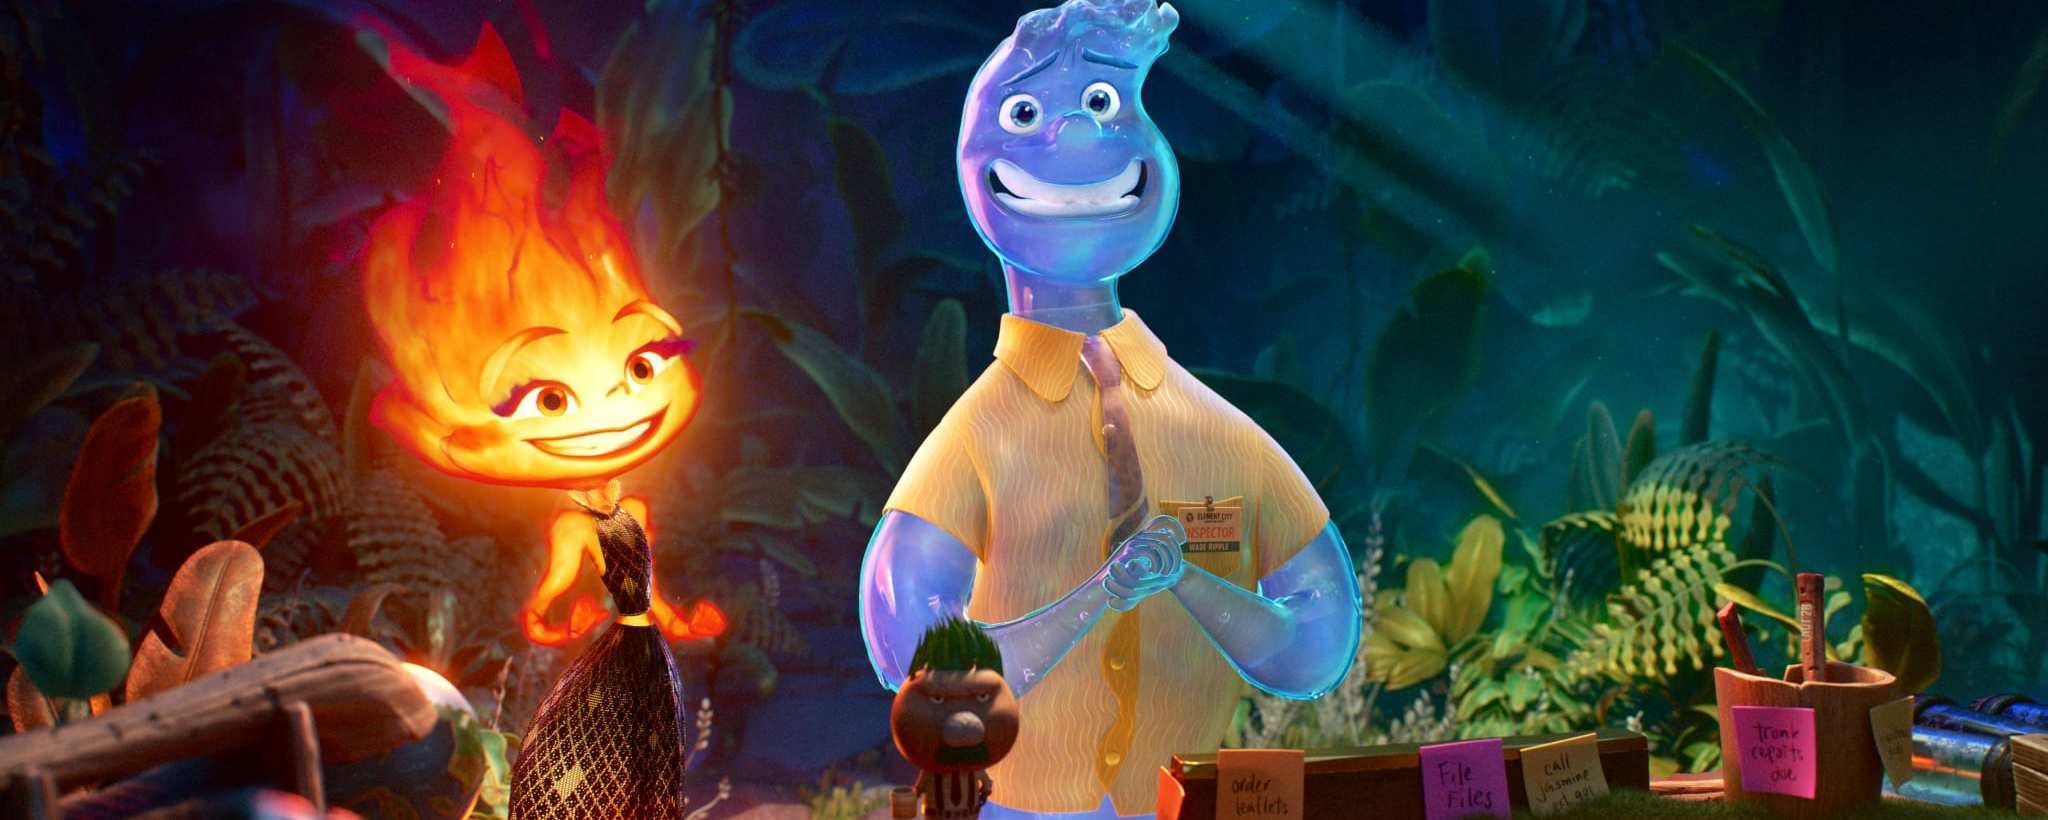 Elementos Tráiler Póster Y Sinopsis De La Nueva Película De Disney Y Pixar